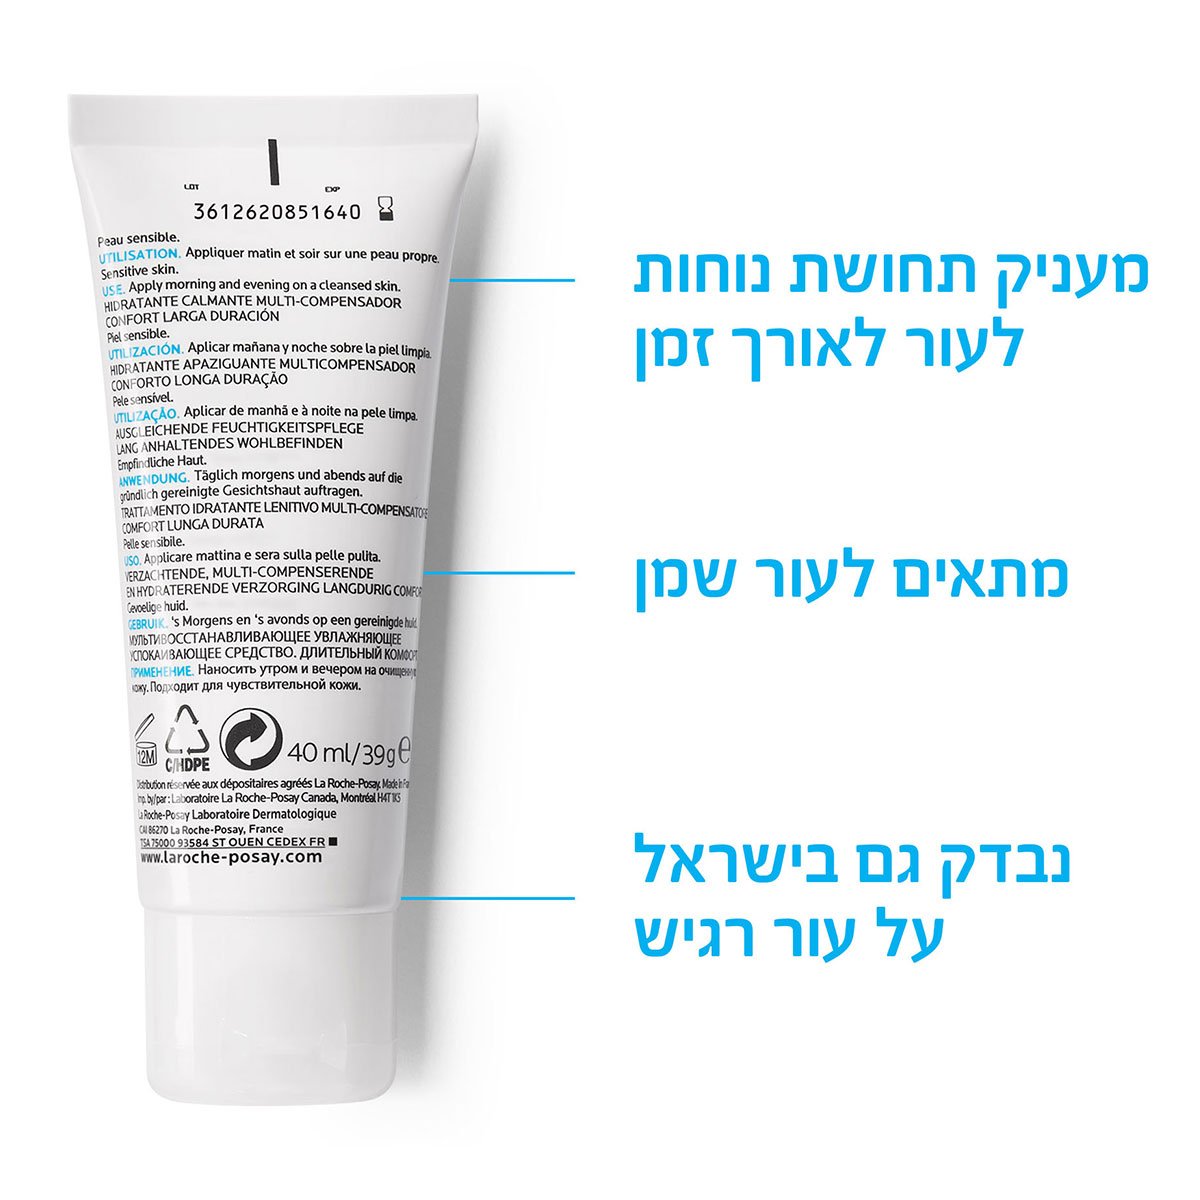 מעניק תחושת נוחות לעור לאורך זמן, מתאים לעור שמן, נבדק גם בישראל על עור רגיש.